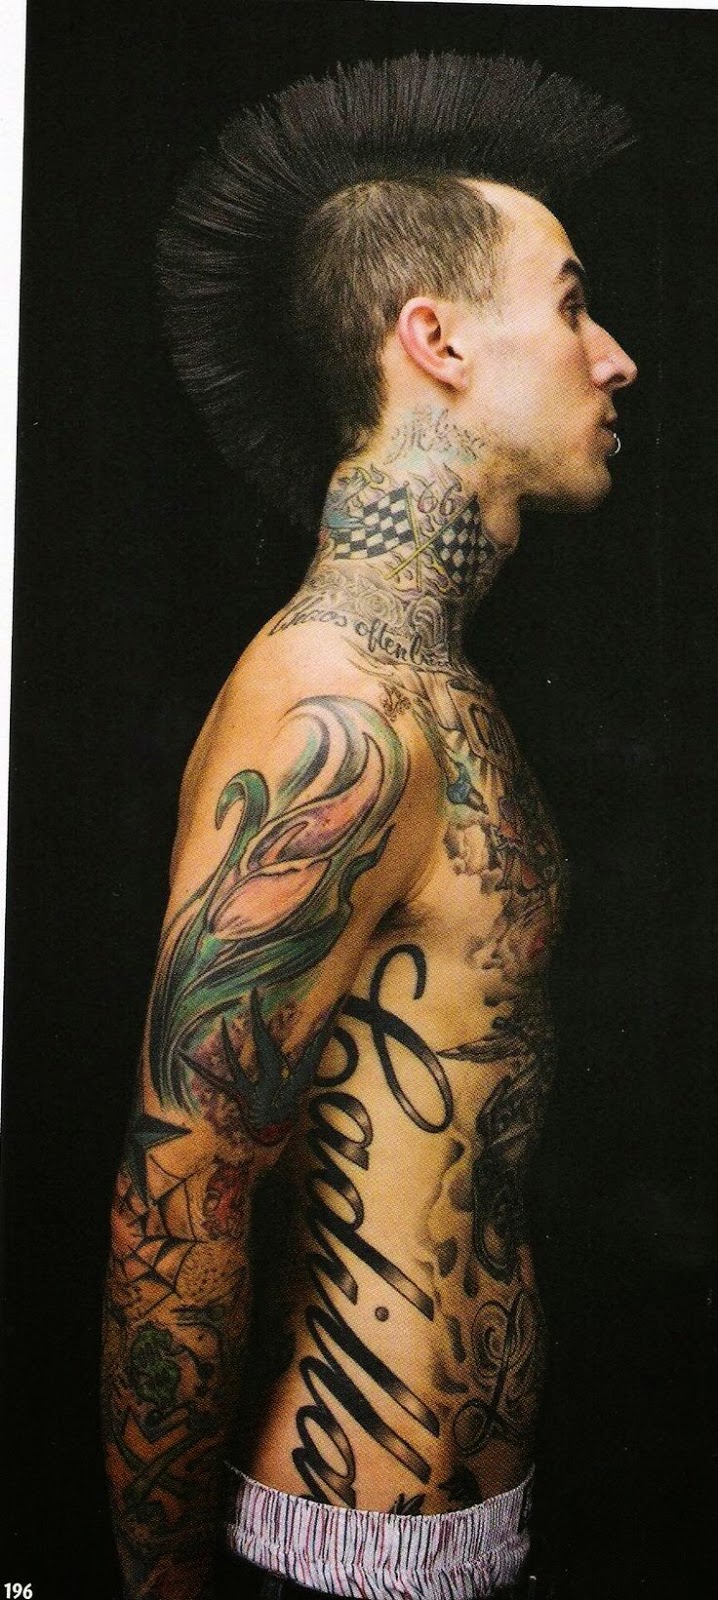 Travis Barker Men Chest Tattoos, Men Chest Tattoo Designs Travis Barker, Travis Barker Artist Tattoo Images, Images of best Travis Barker Tattoos, Artist, Parts,